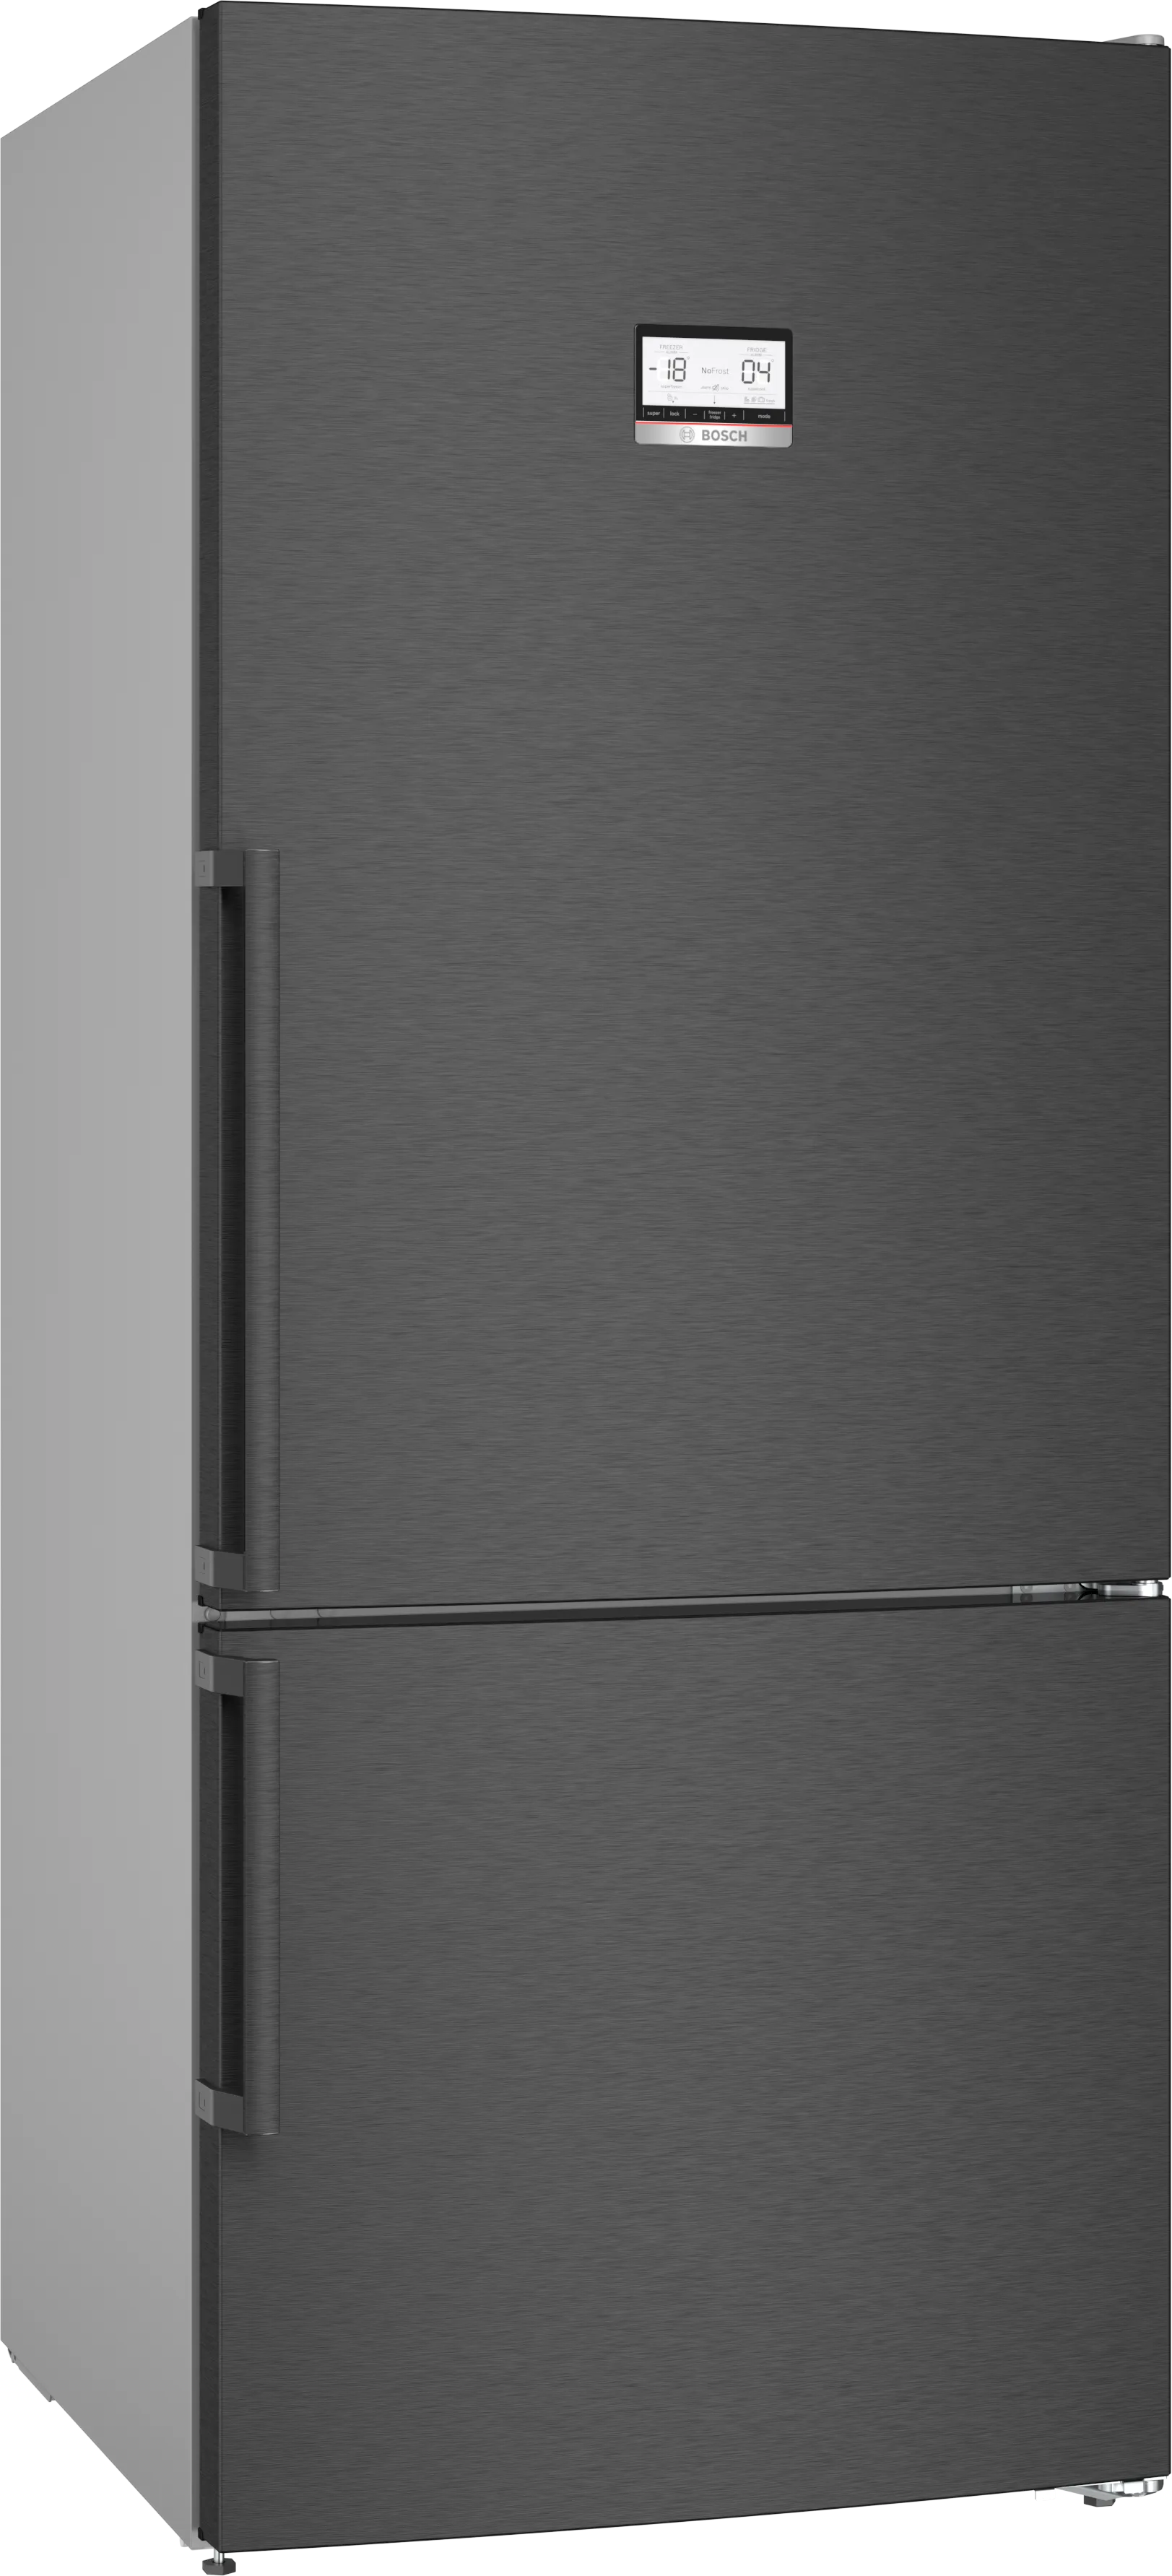 Serie 6 Freistehende Kühl-Gefrier-Kombination mit Gefrierbereich unten 186 x 75 cm Edelstahl schwarz 